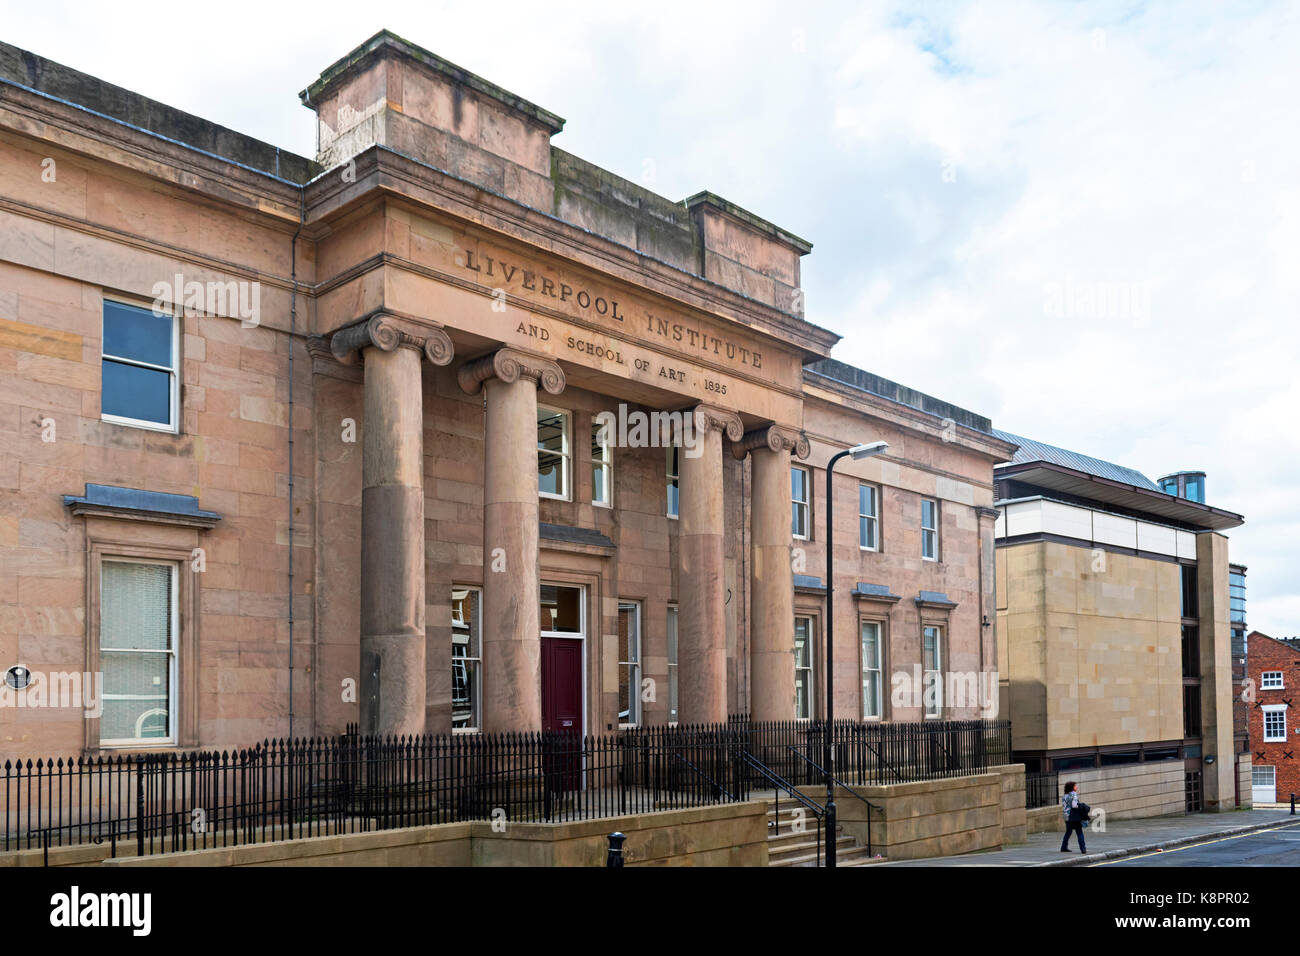 Institut des arts de Liverpool, situé au coeur de la ville de Liverpool, Angleterre, Grande-Bretagne, Royaume-Uni. Banque D'Images